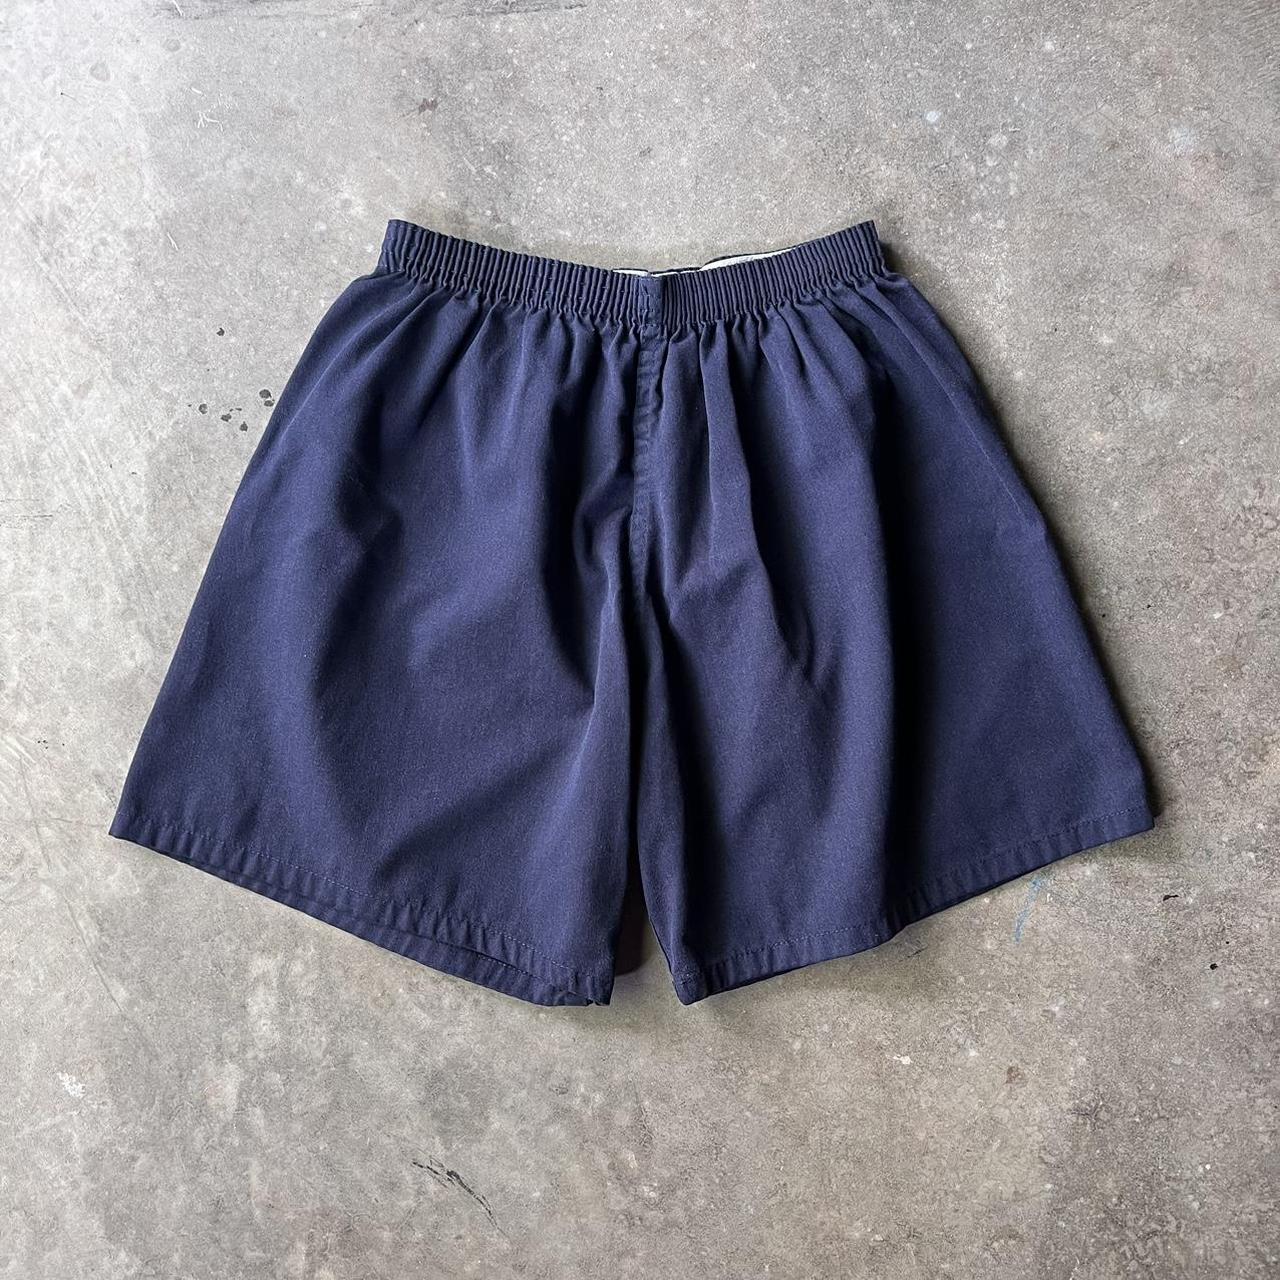 Your grandpas shorts Fit size 8/10 Baggy fit - Depop